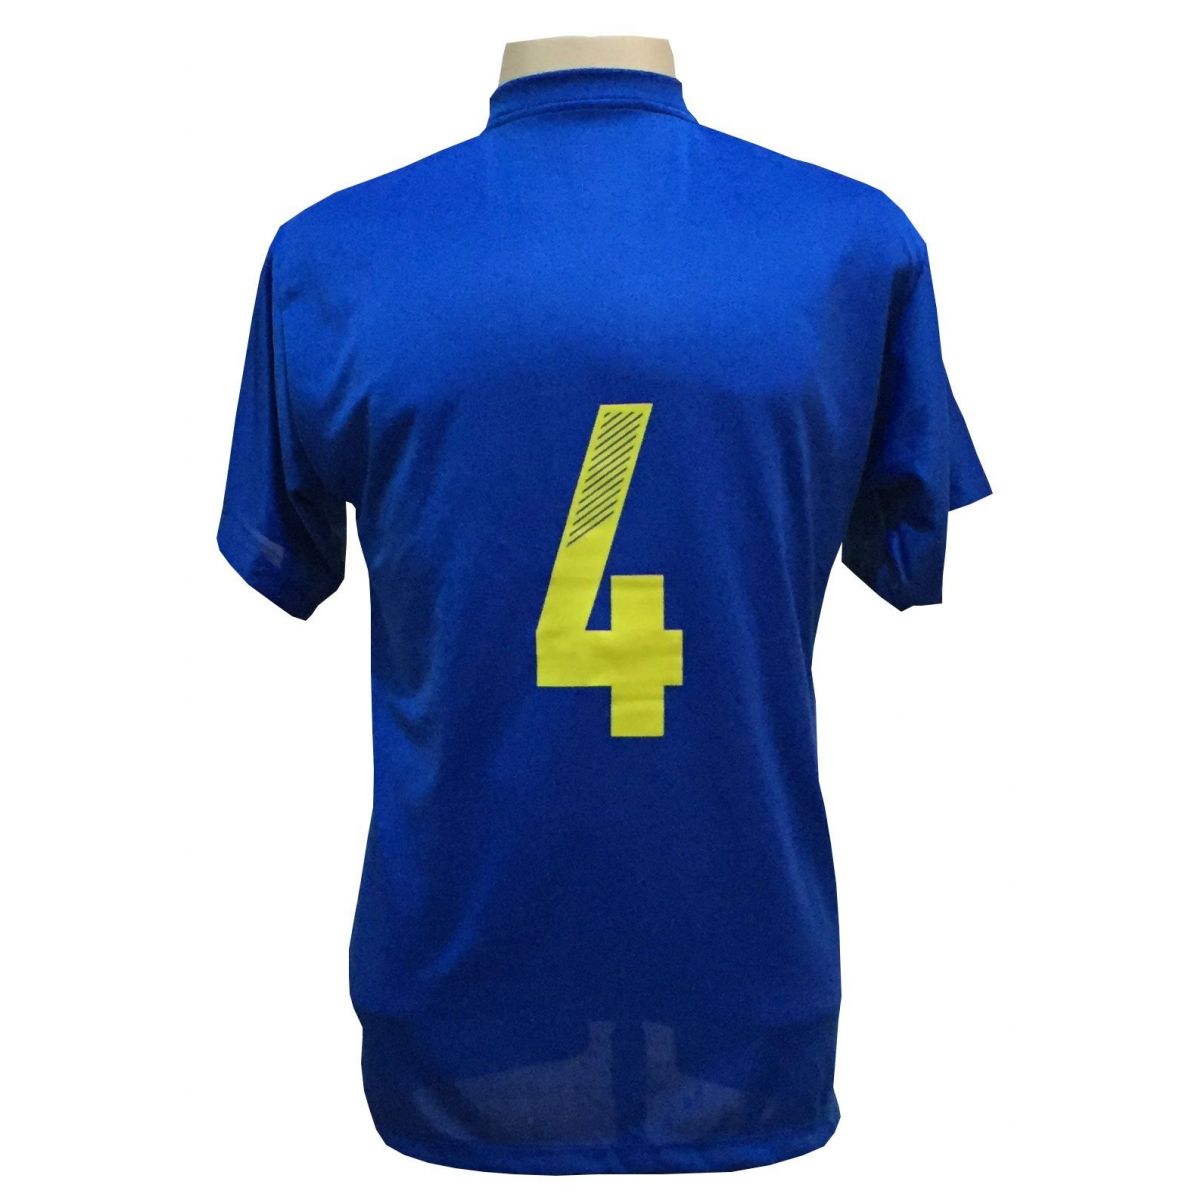 Uniforme Esportivo Completo modelo Boca Juniors 14+1 (14 camisas Royal/Amarelo + 14 calções Madrid Royal + 14 pares de meiões Amarelos + 1 conjunto de goleiro) + Brindes